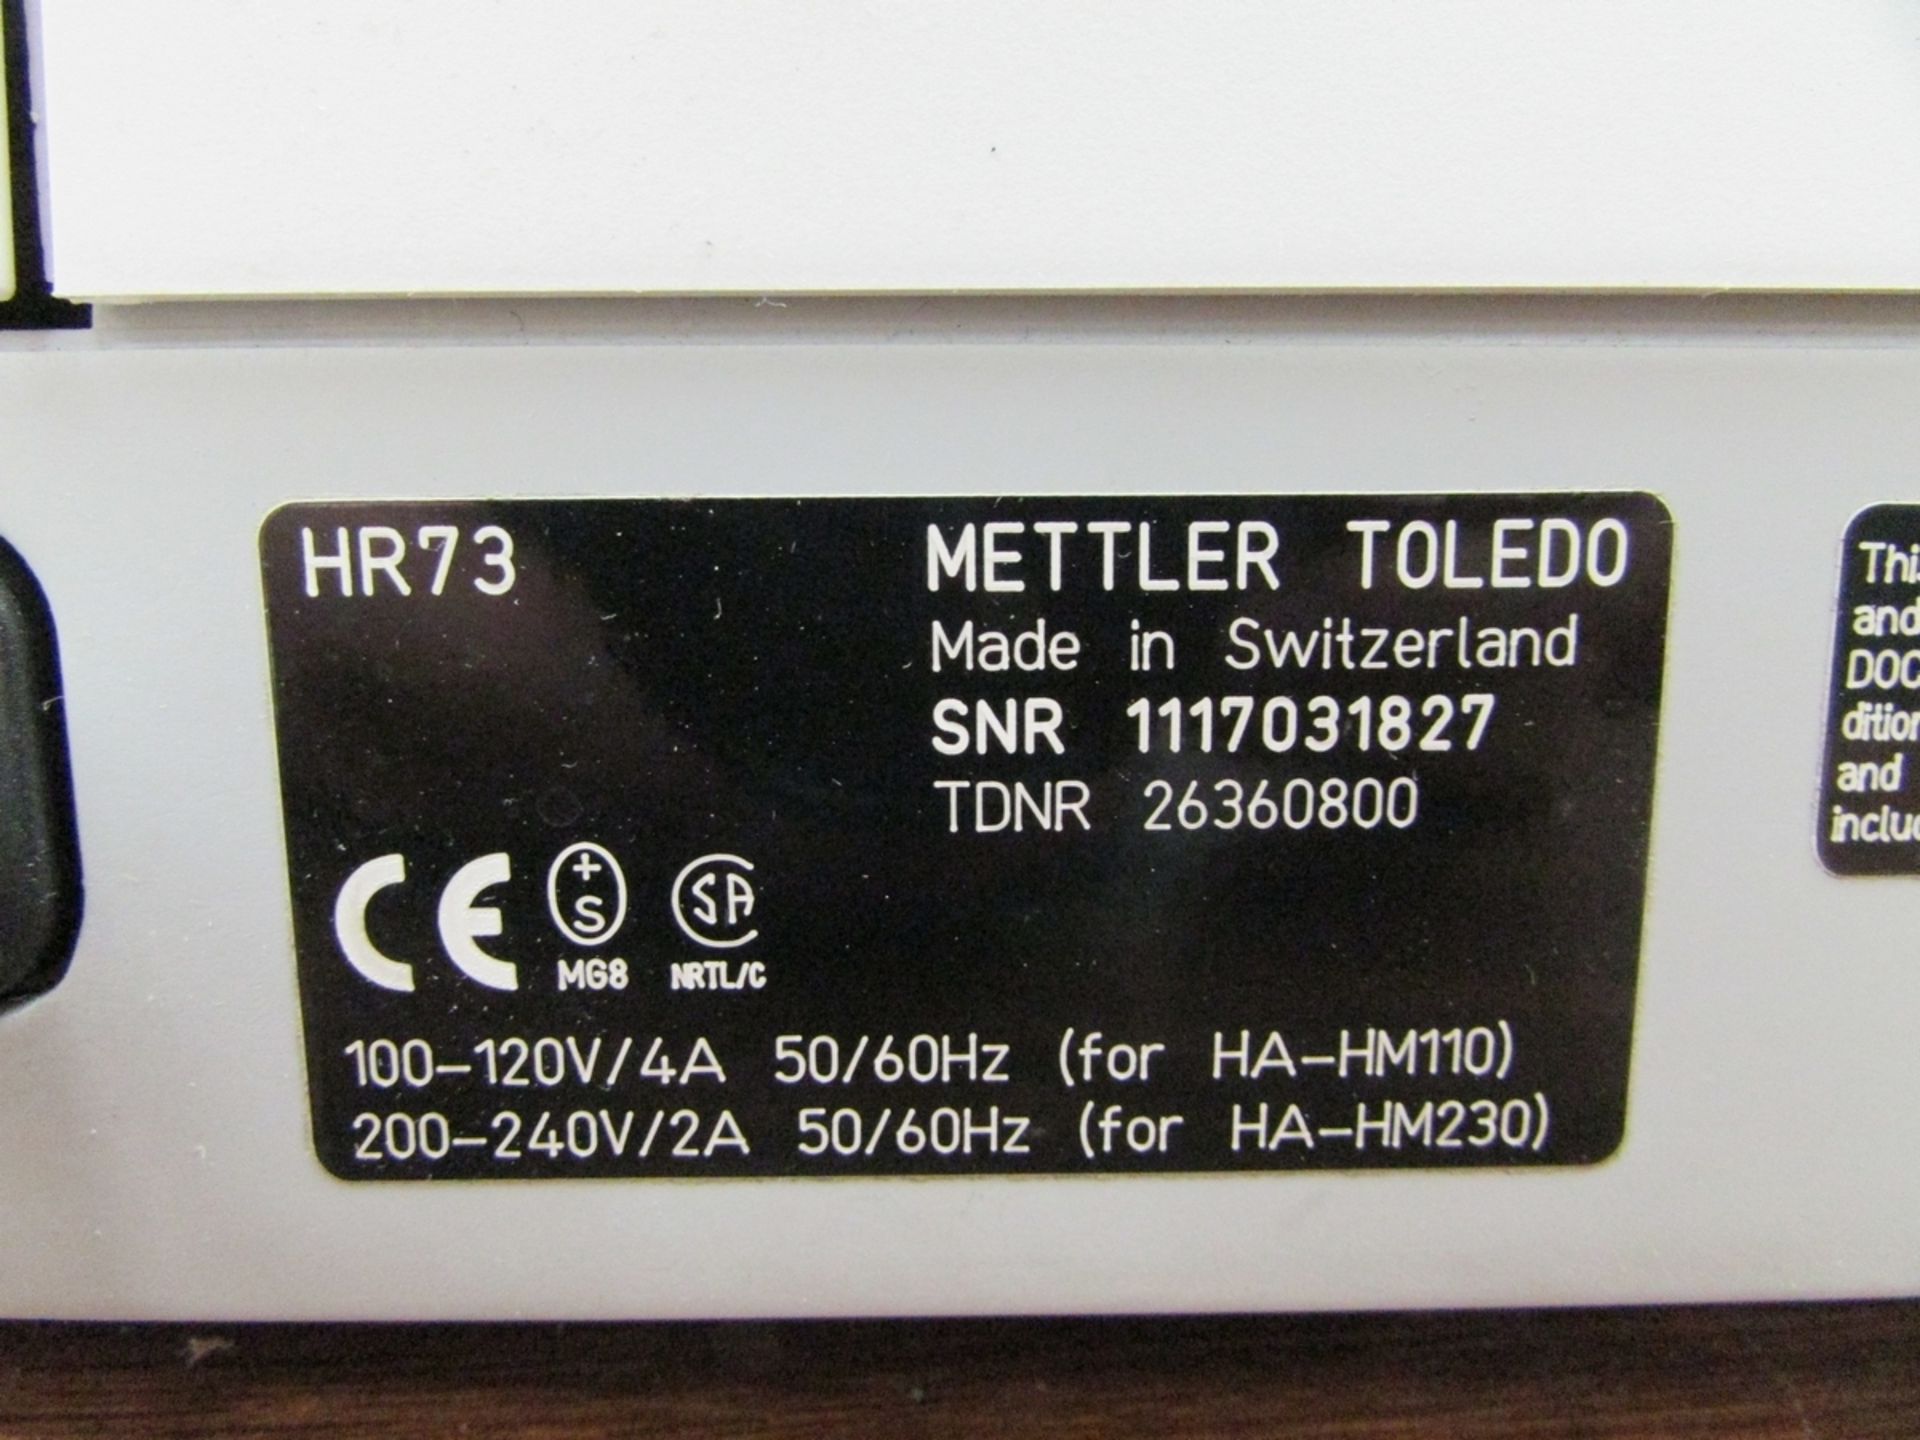 Mettler Toledo HR73 Halogen Moisture Analyzer - Image 4 of 4